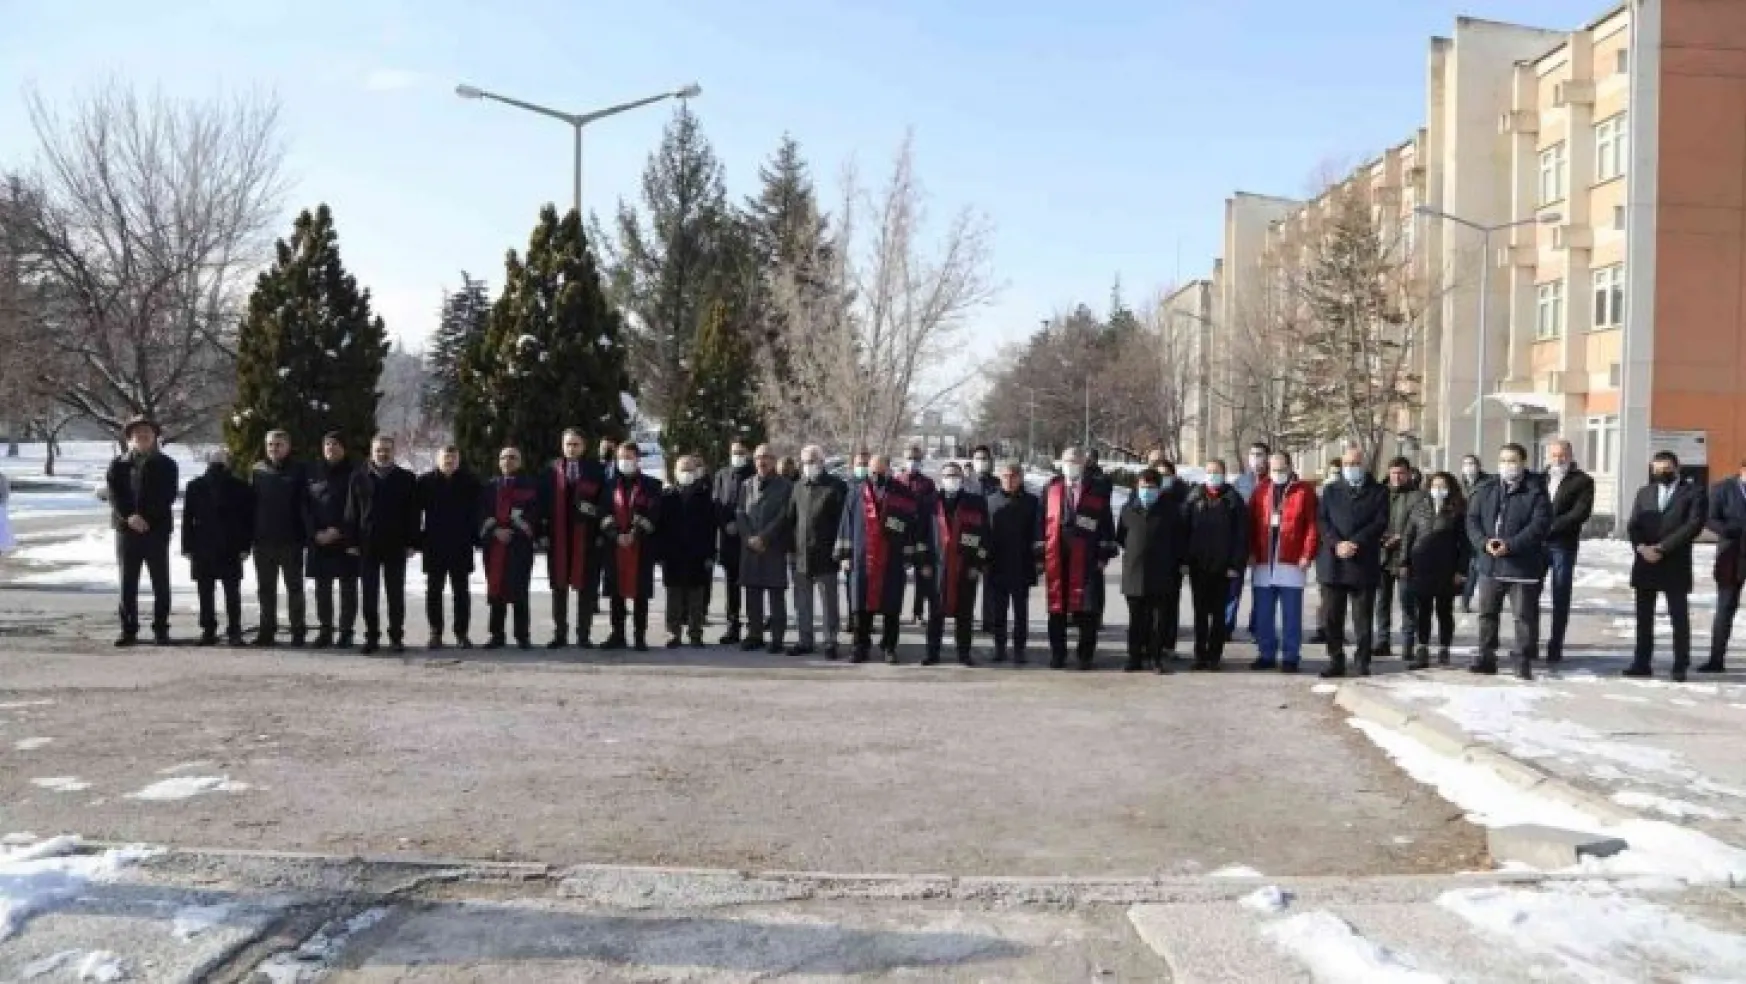 ERÜ'de 14 Mart Tıp Bayramı kutlandı